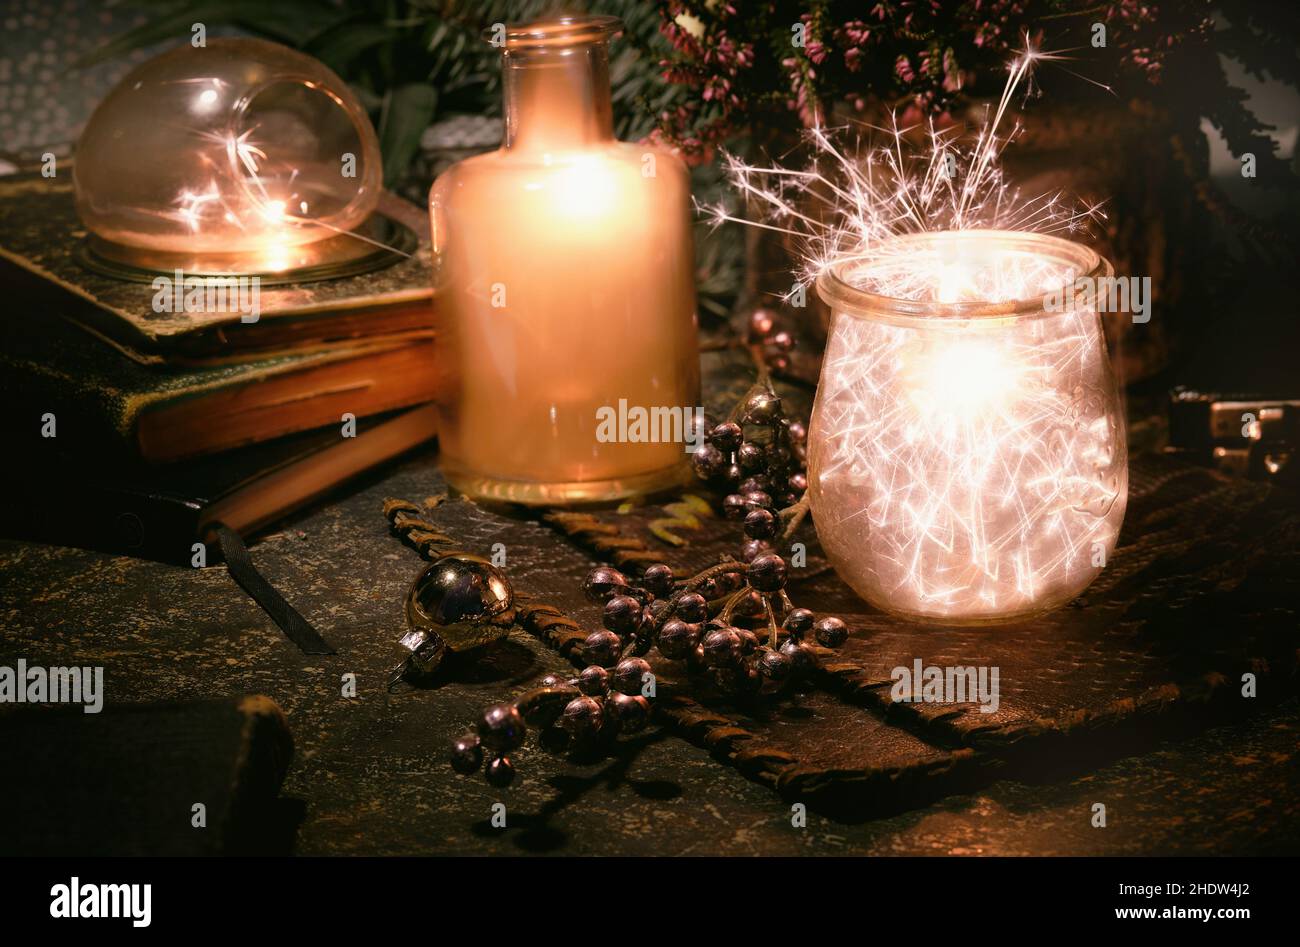 Lumières magiques avec des sparkles et orange phosphorescent dans des pots en verre vintage.Lumières et livres anciens.Plantes d'intérieur et pot de fleur de bruyère.Soirée romantique. Banque D'Images